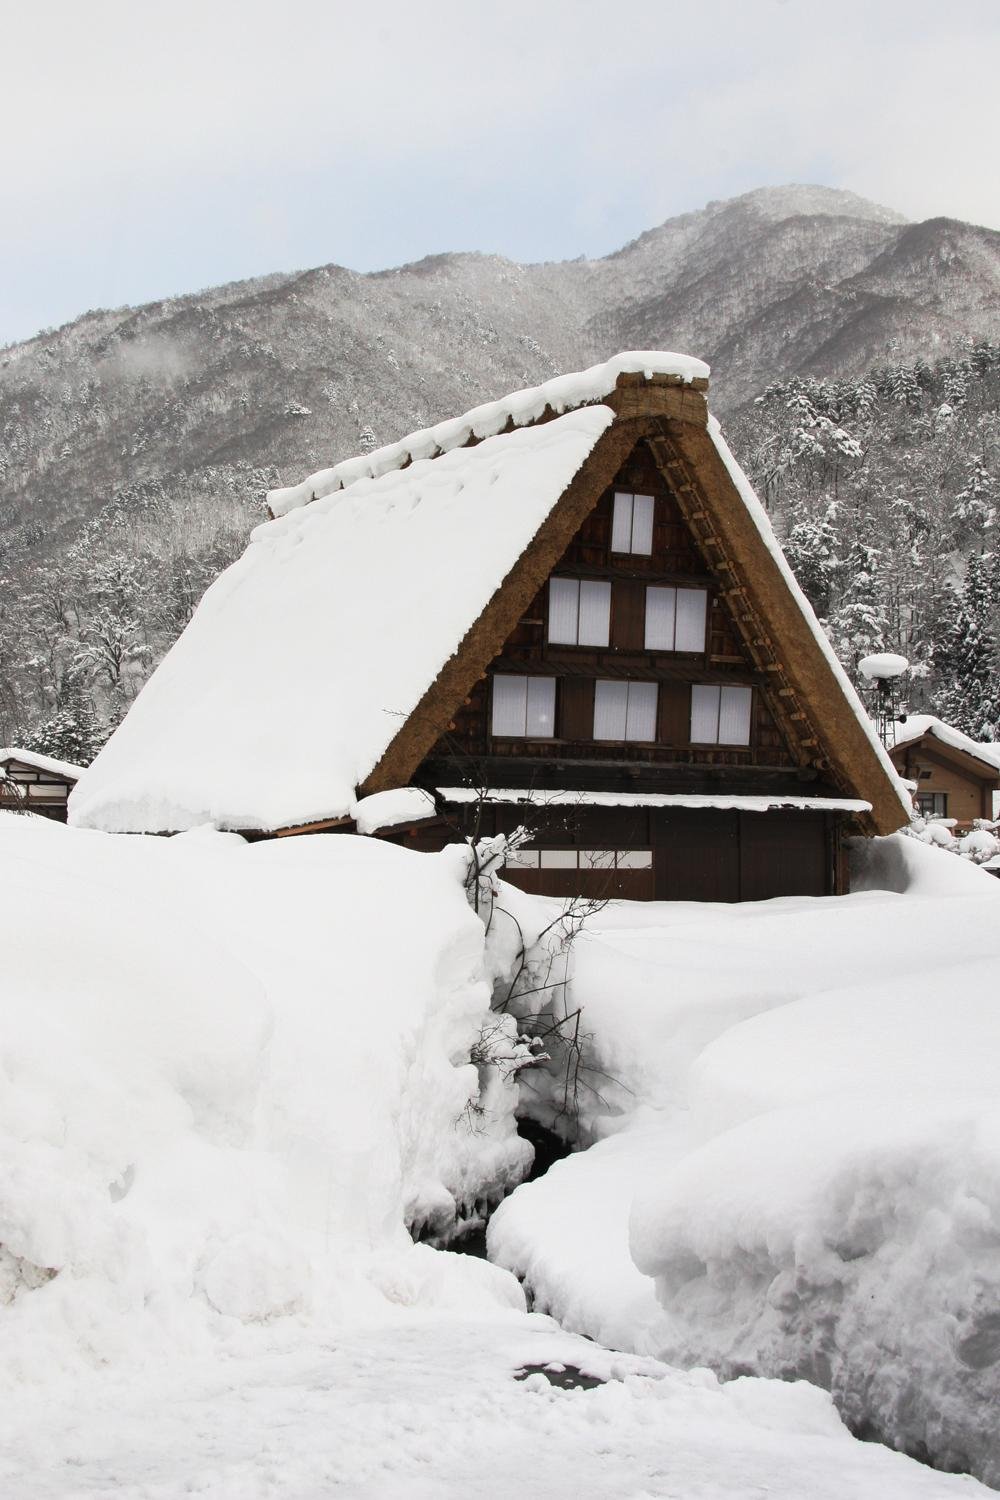 Деревня хорошо известна своими 114 домами, построенных в архитектурном стиле, известном как Гассё-Зукури.&nbsp;Эти дома были разработаны и построены так, чтобы выдерживать сильные снегопады зимой.